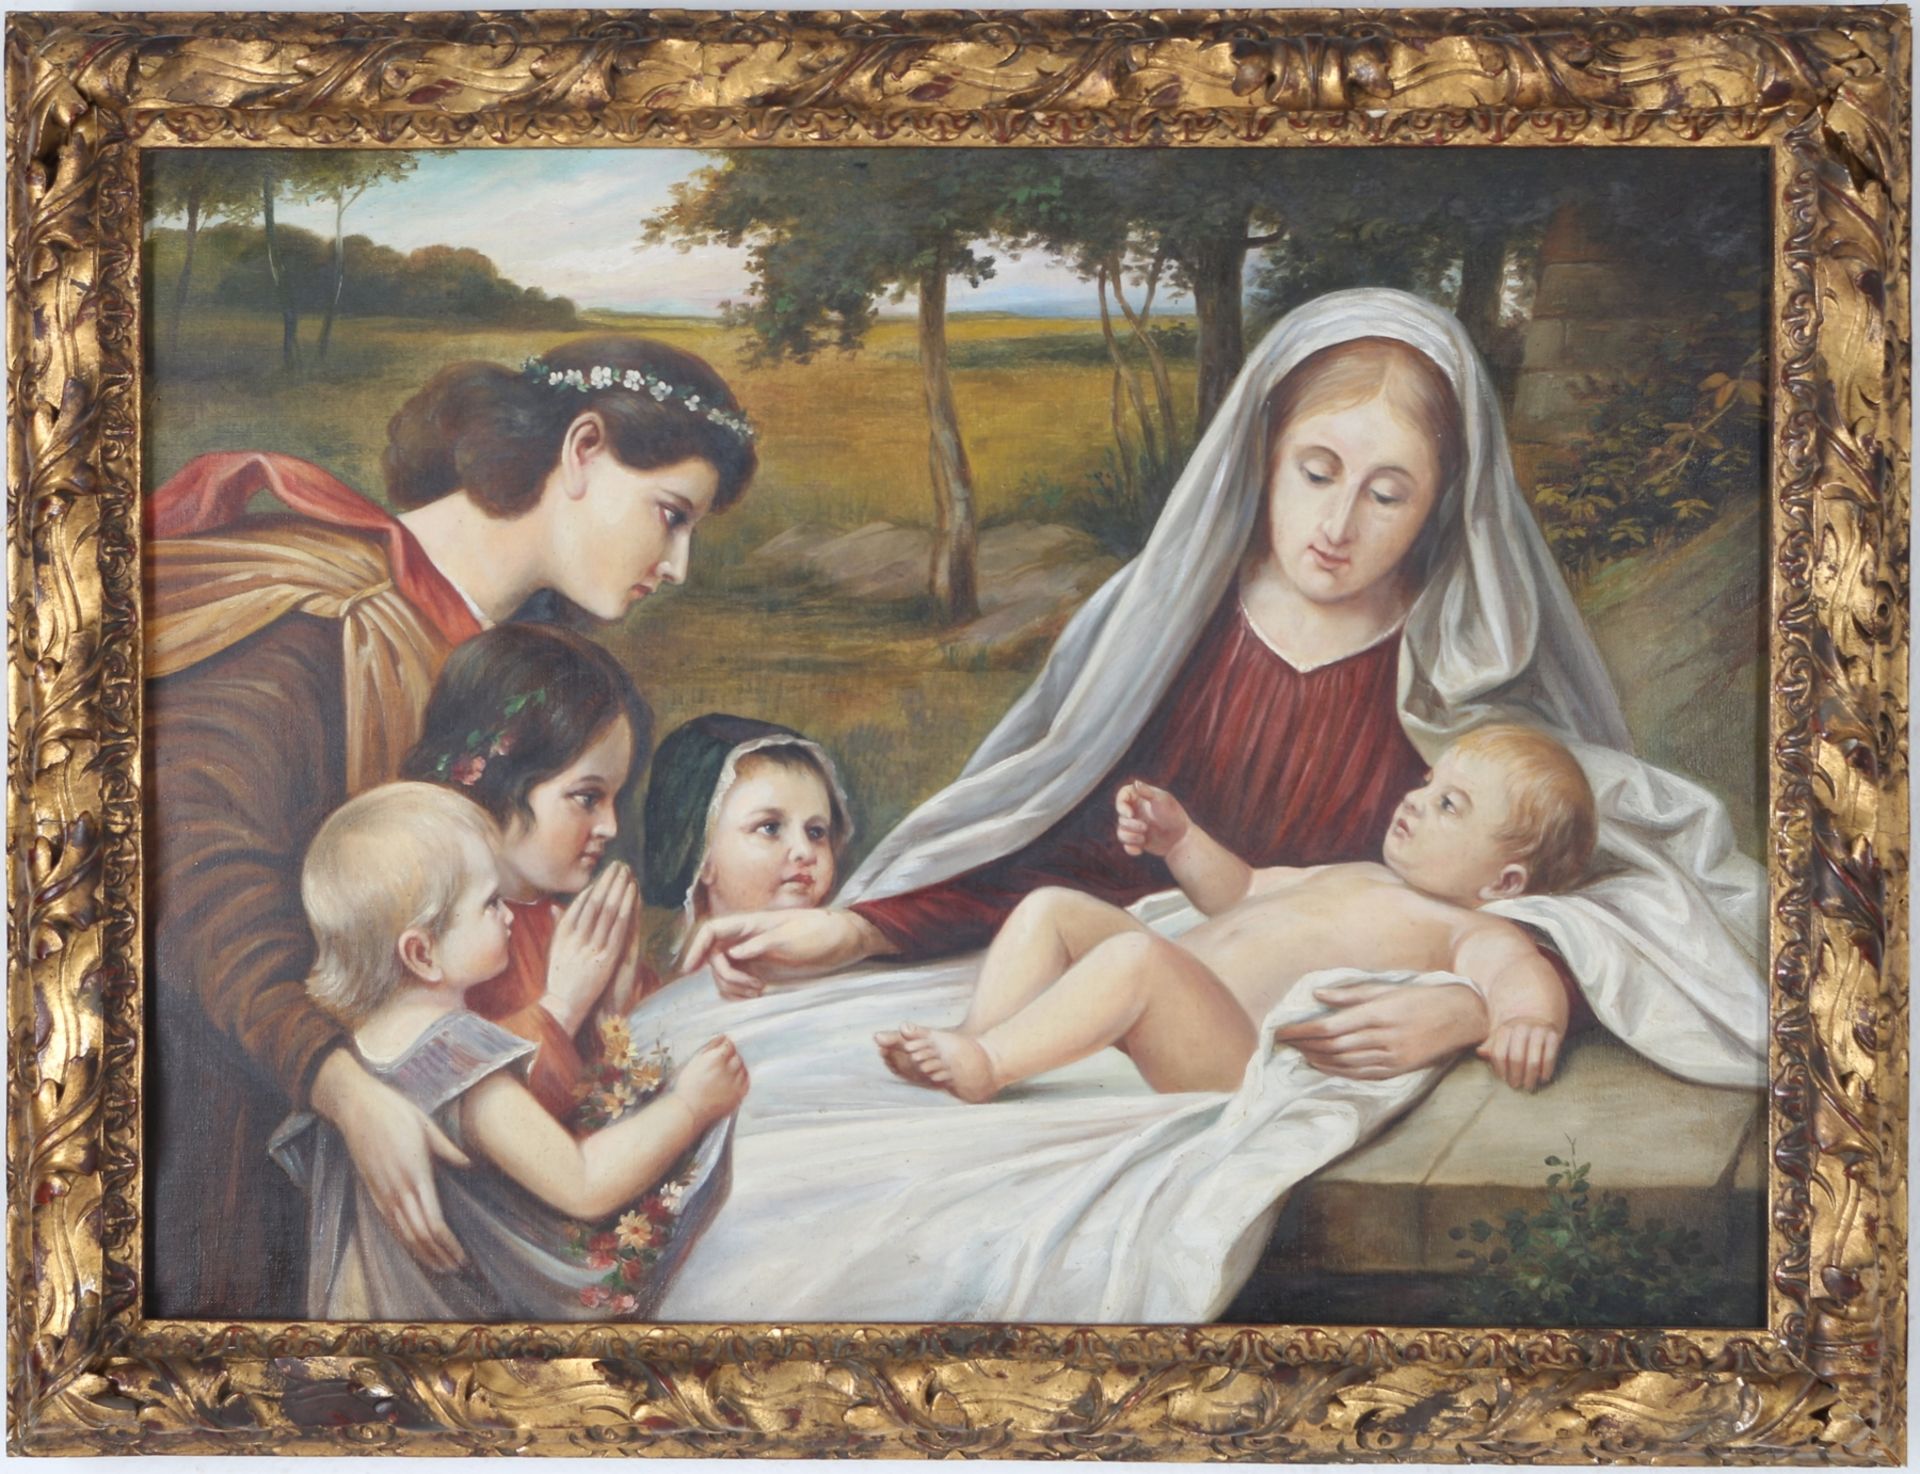 Unbekannter Maler um 1900, Heilige Familie, unknown painter around 1900, holy family,